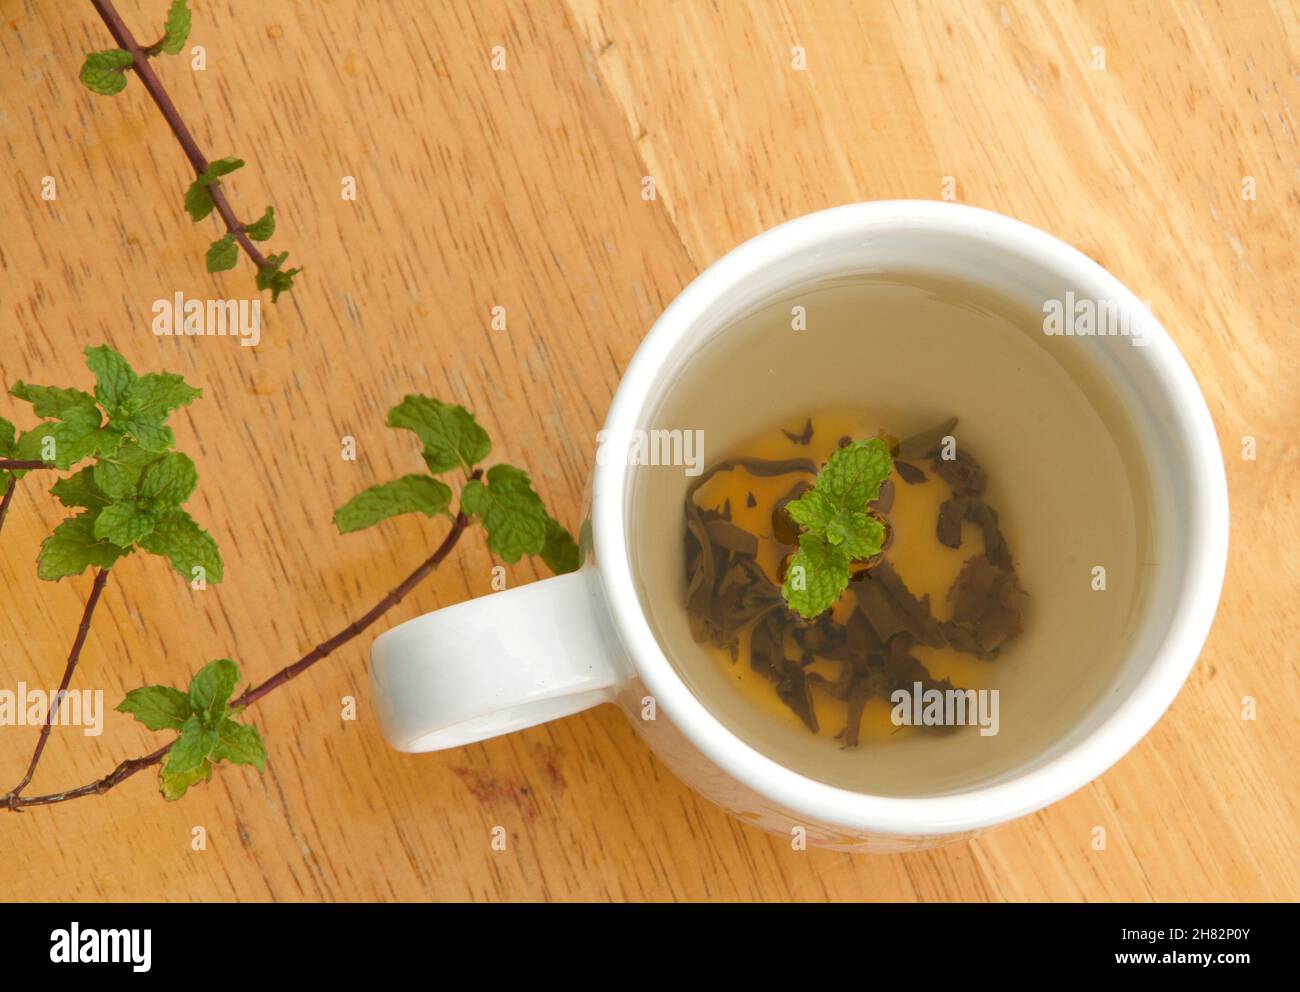 primo piano di vista del tè verde con foglie di menta in una tazza bianca e foglie di mente sul legno Foto Stock